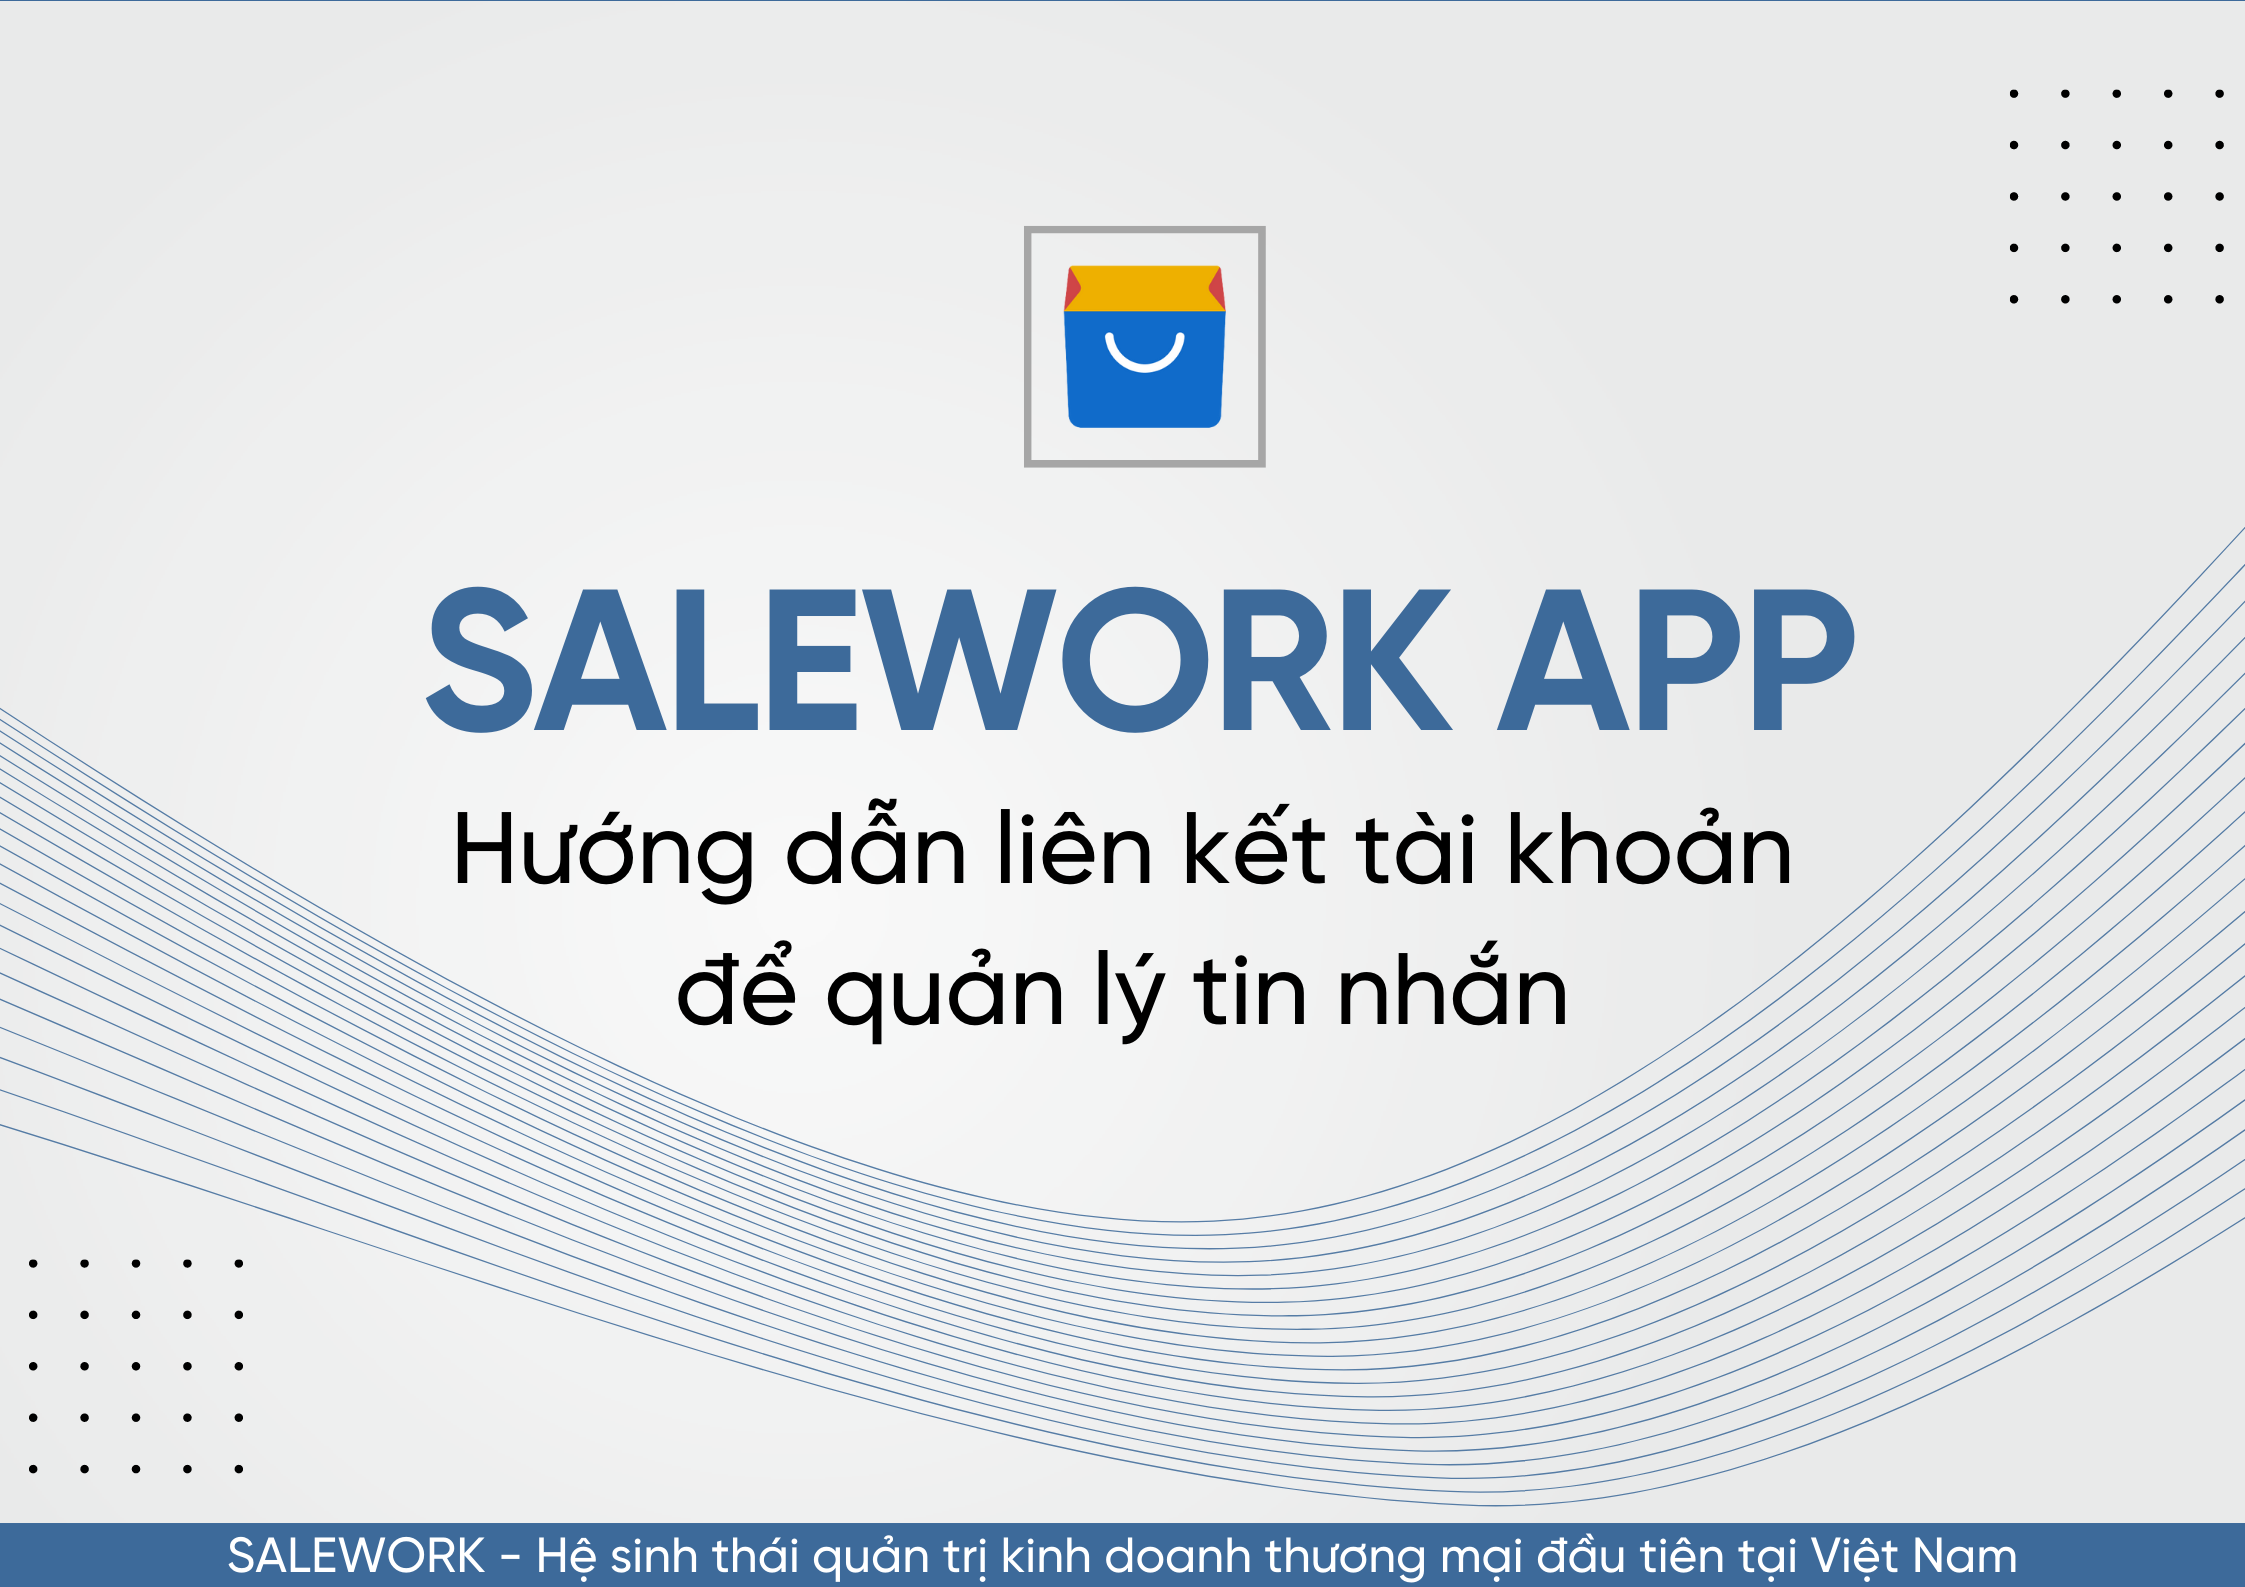 Hướng dẫn liên kết tài khoản để quản lý tin nhắn qua Salework Mobile - 82